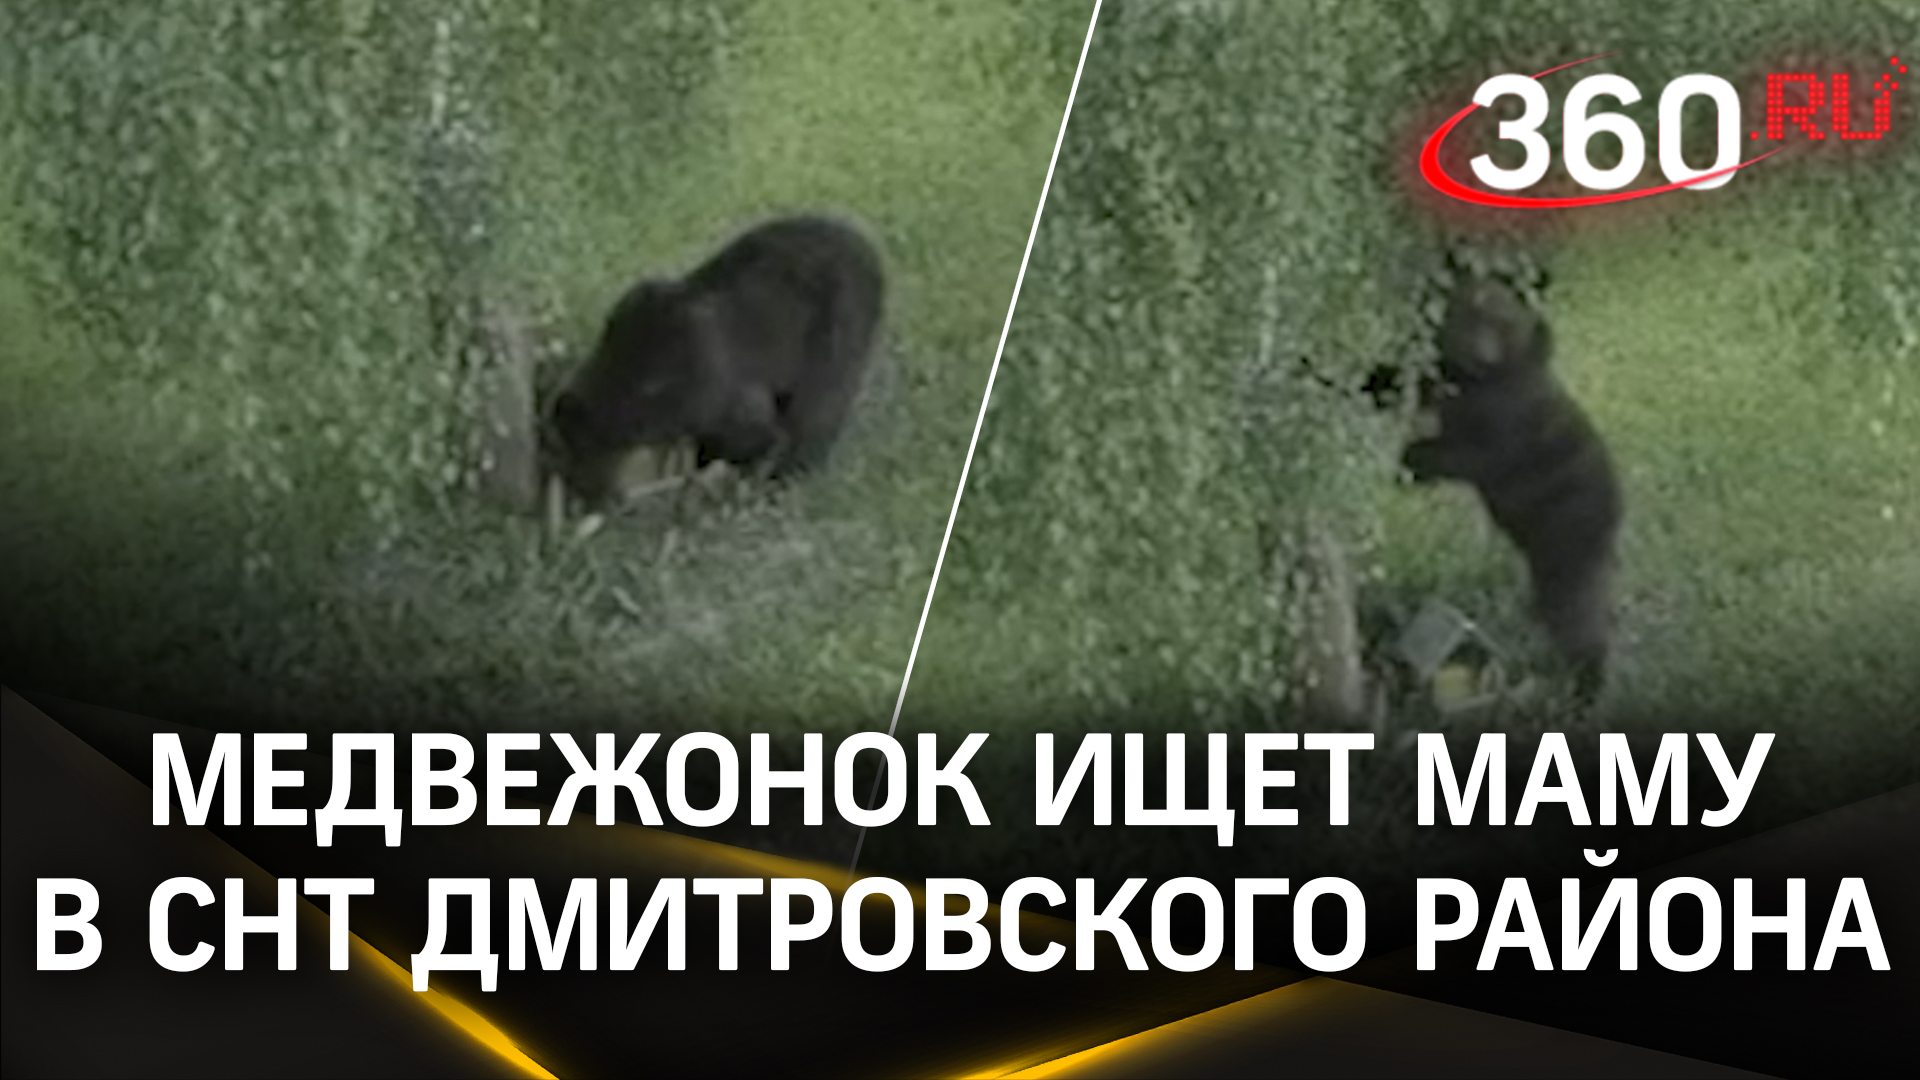 Медвежонок отправился в самоволку: изучает мир в Дмитровском районе, чем напугал местных жителей